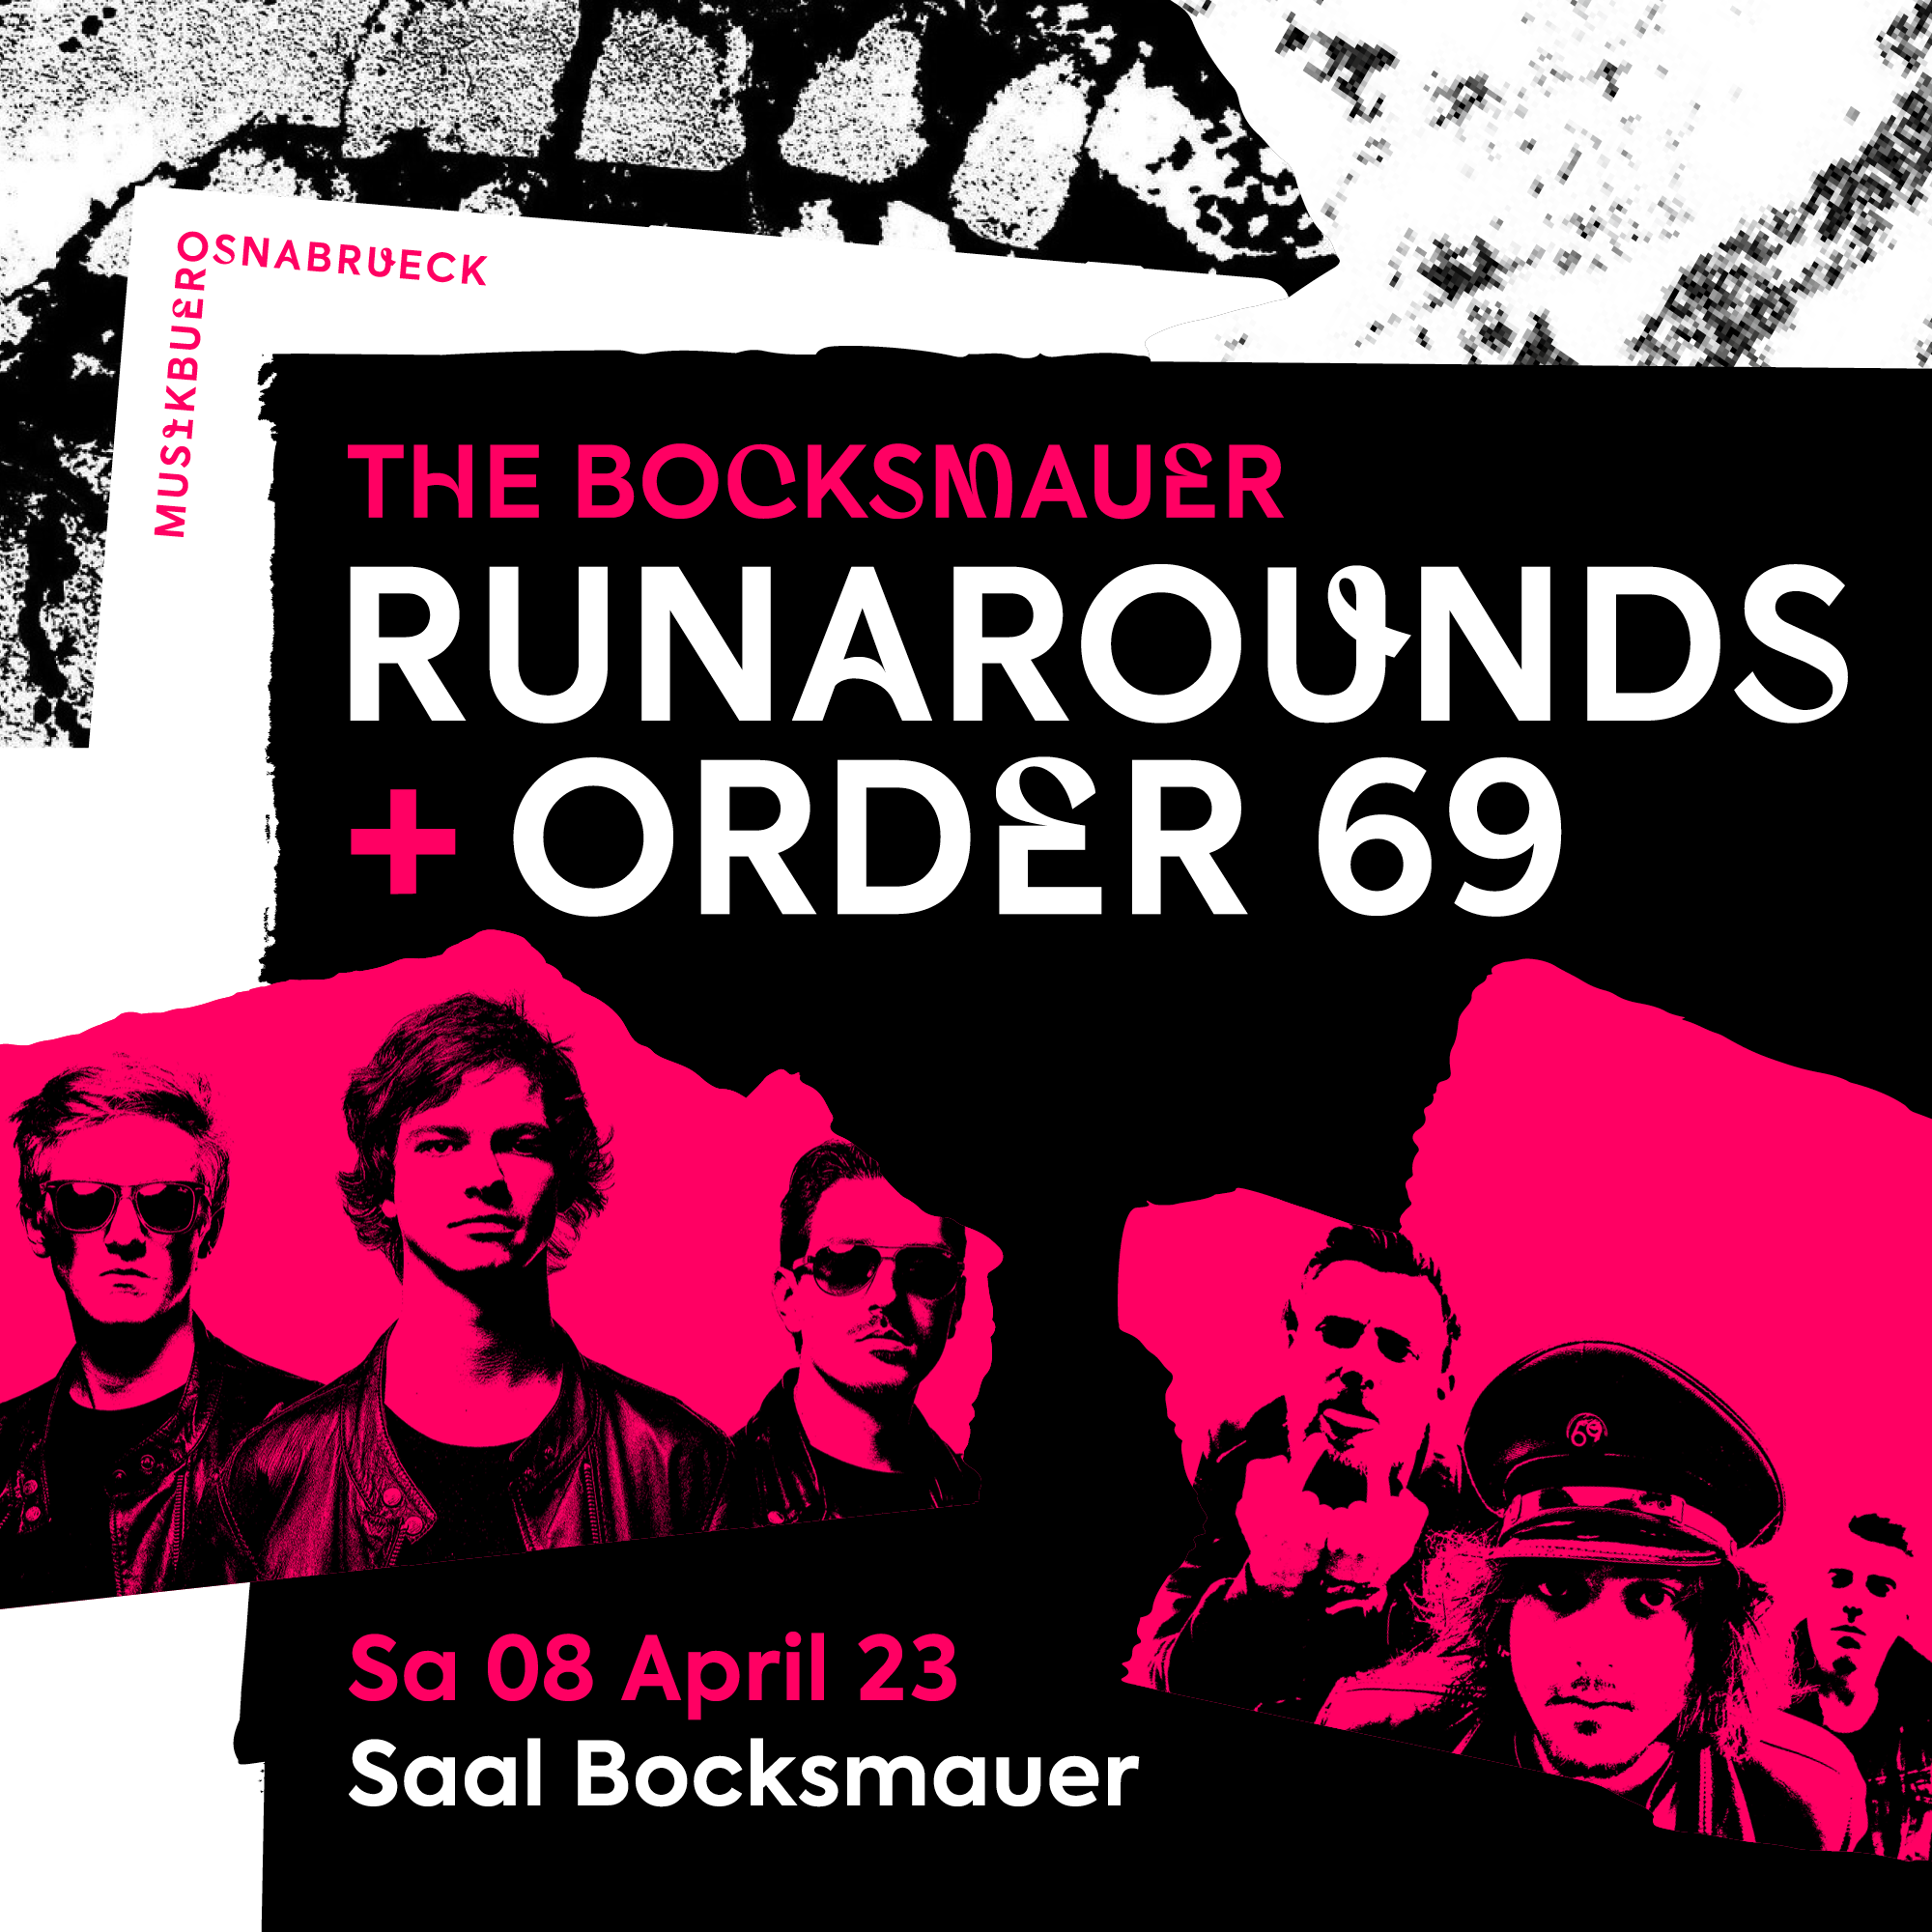 The Bocksmauer mit Runarounds und Order 69. Samstag, 08.04.2023 / Saal Bocksmauer Osnabrück